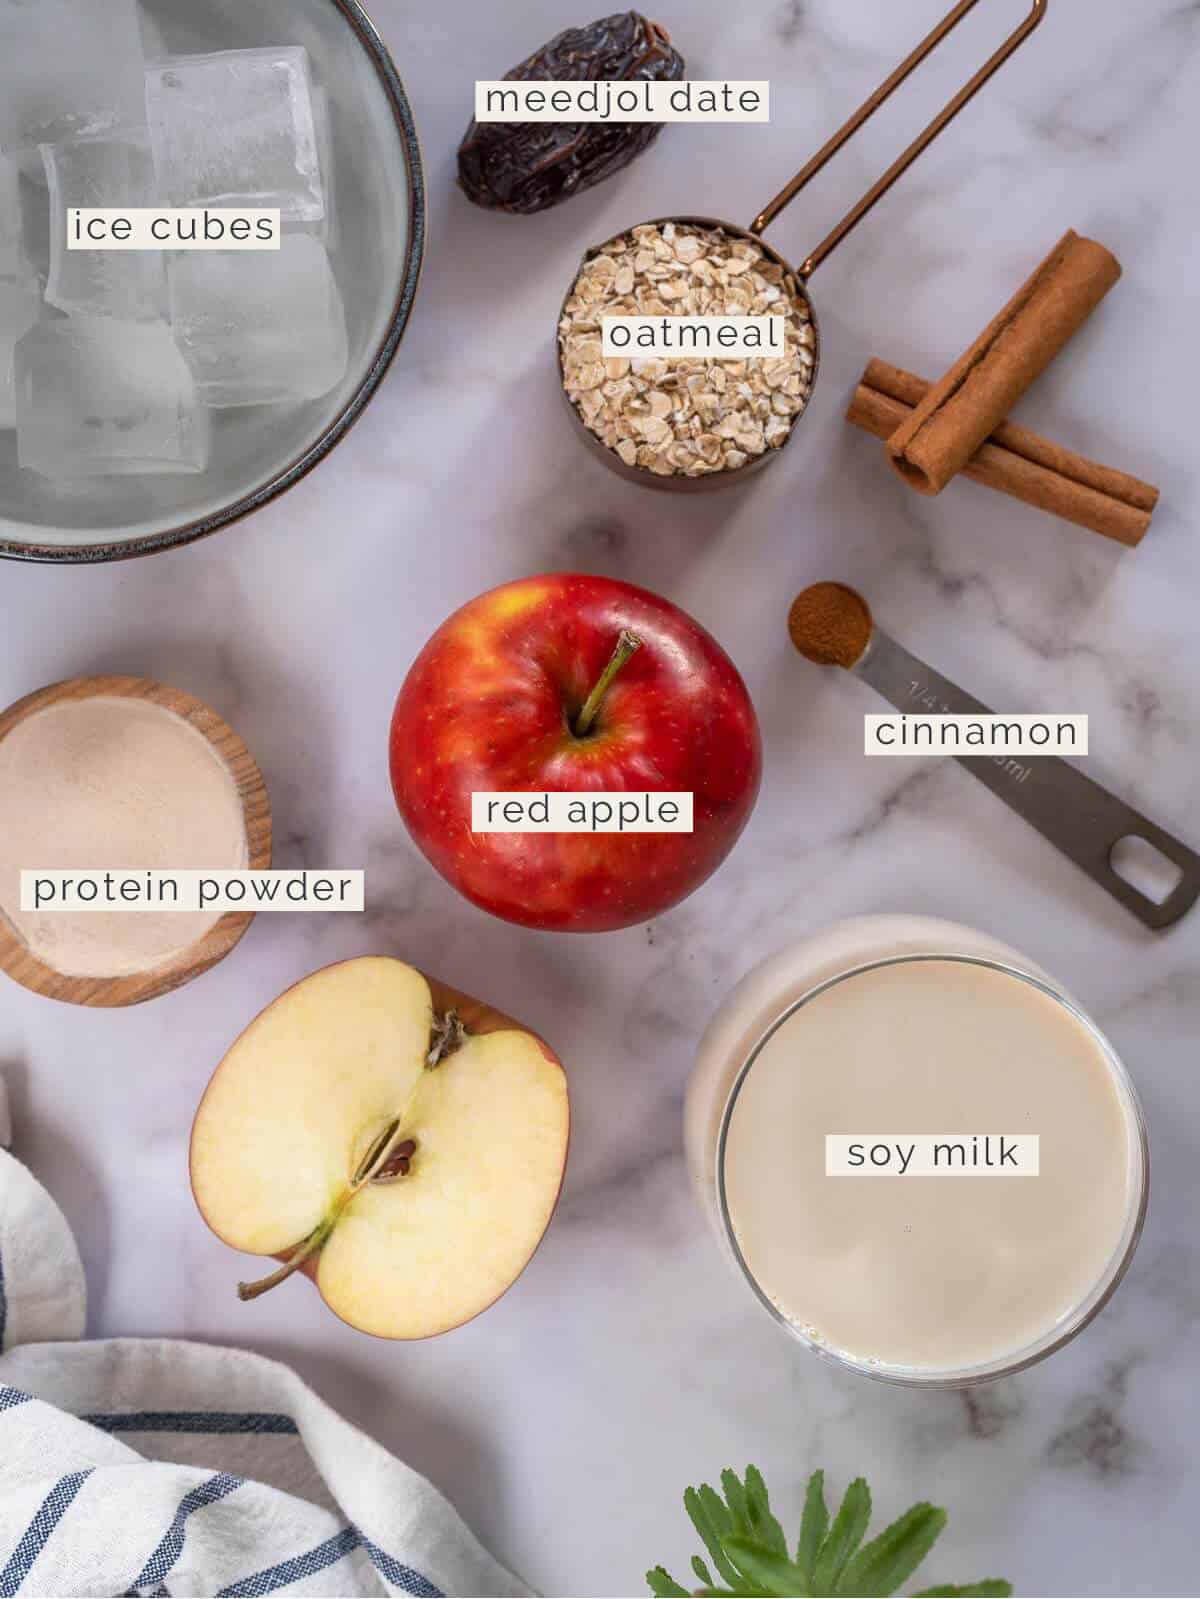 cinnamon apple smoothie recipe ingredients.